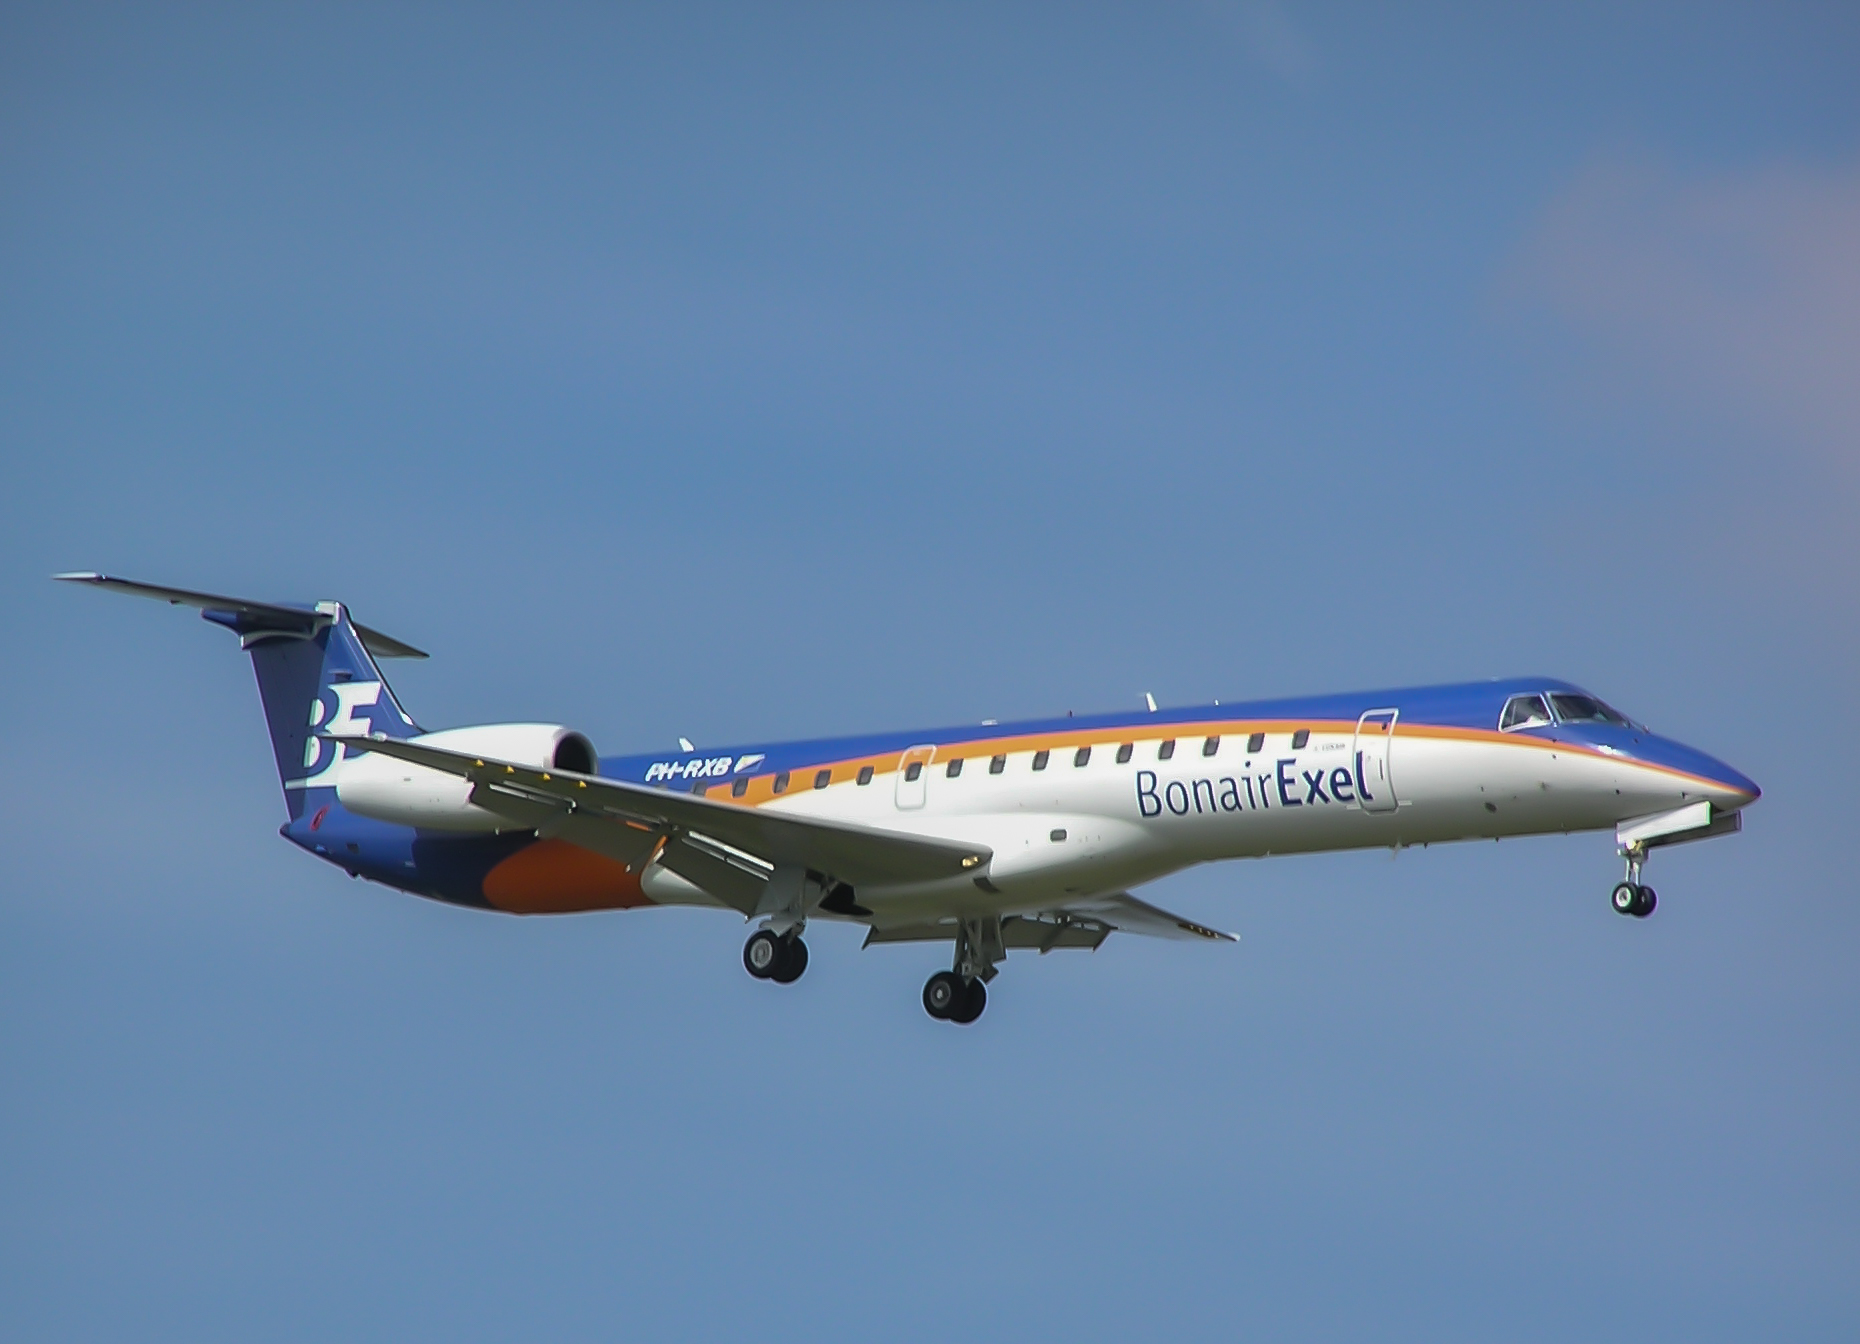 SE-RIA/SERIA Skyways Express Embraer ERJ-145 Airframe Information - AVSpotters.com